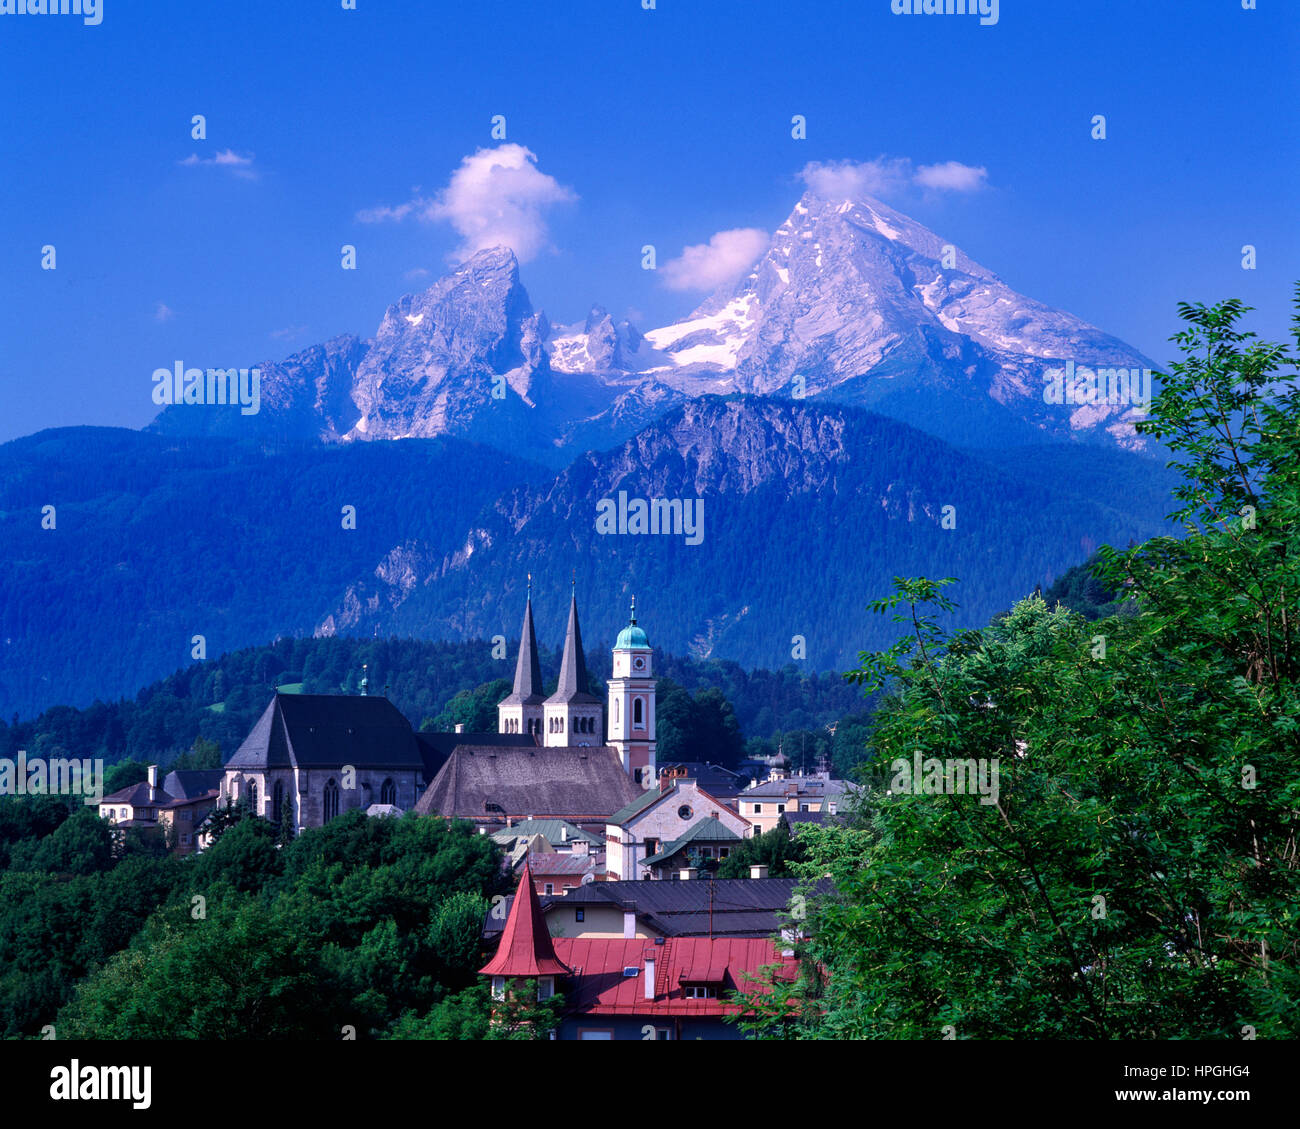 Berchtesgaden town and the Watzmann mountain, Bavaria, Germany Stock Photo